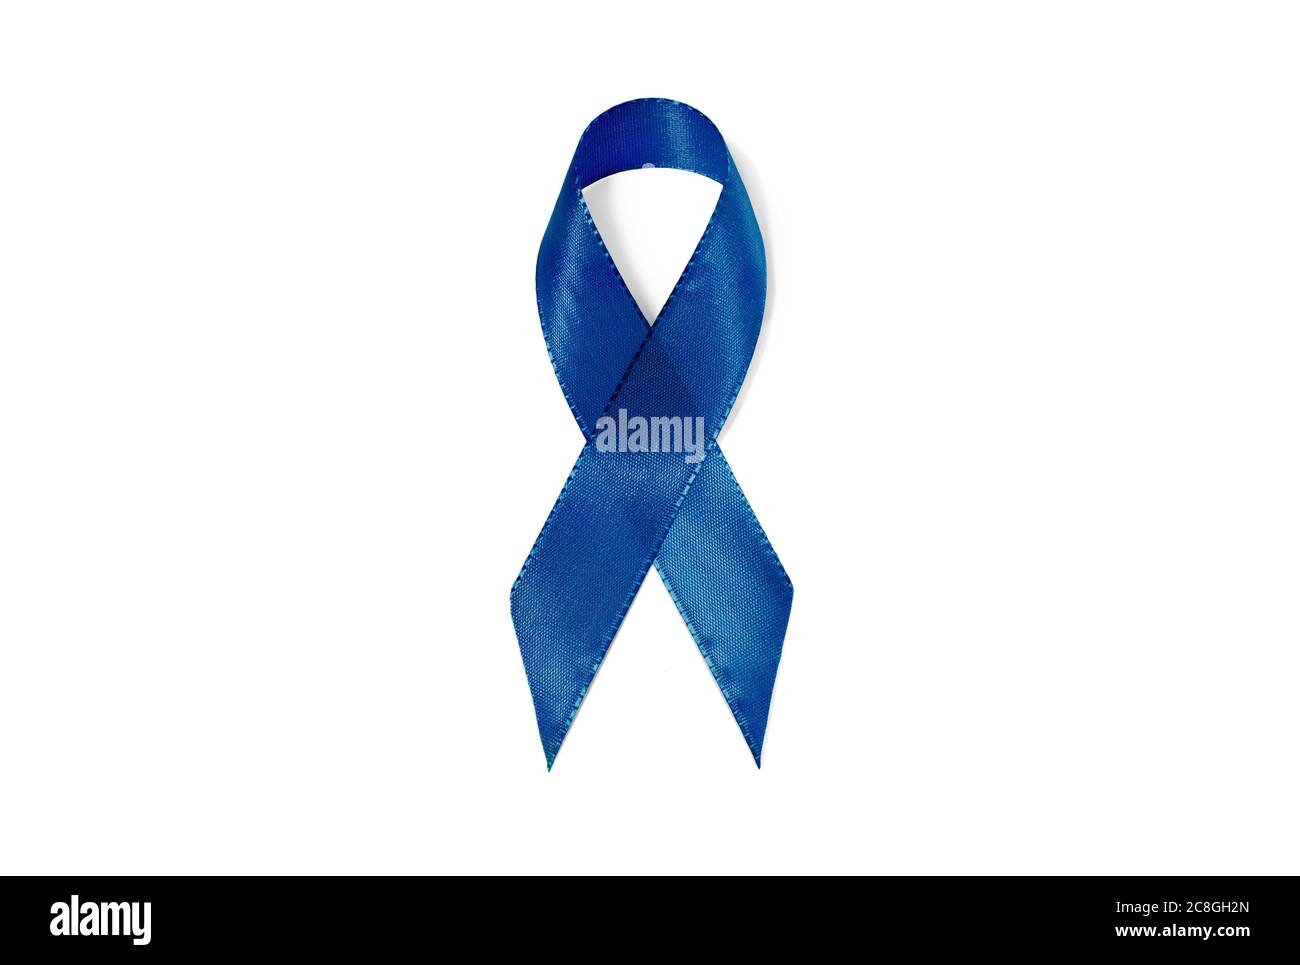 Symbolbild Bewusstsein Band Blau, Band, Zeichen der Solidarität, Transverse Myelitis, Alopecia, unterstützen die Freiheit der Meinungsäußerung, Pressefreiheit Stockfoto